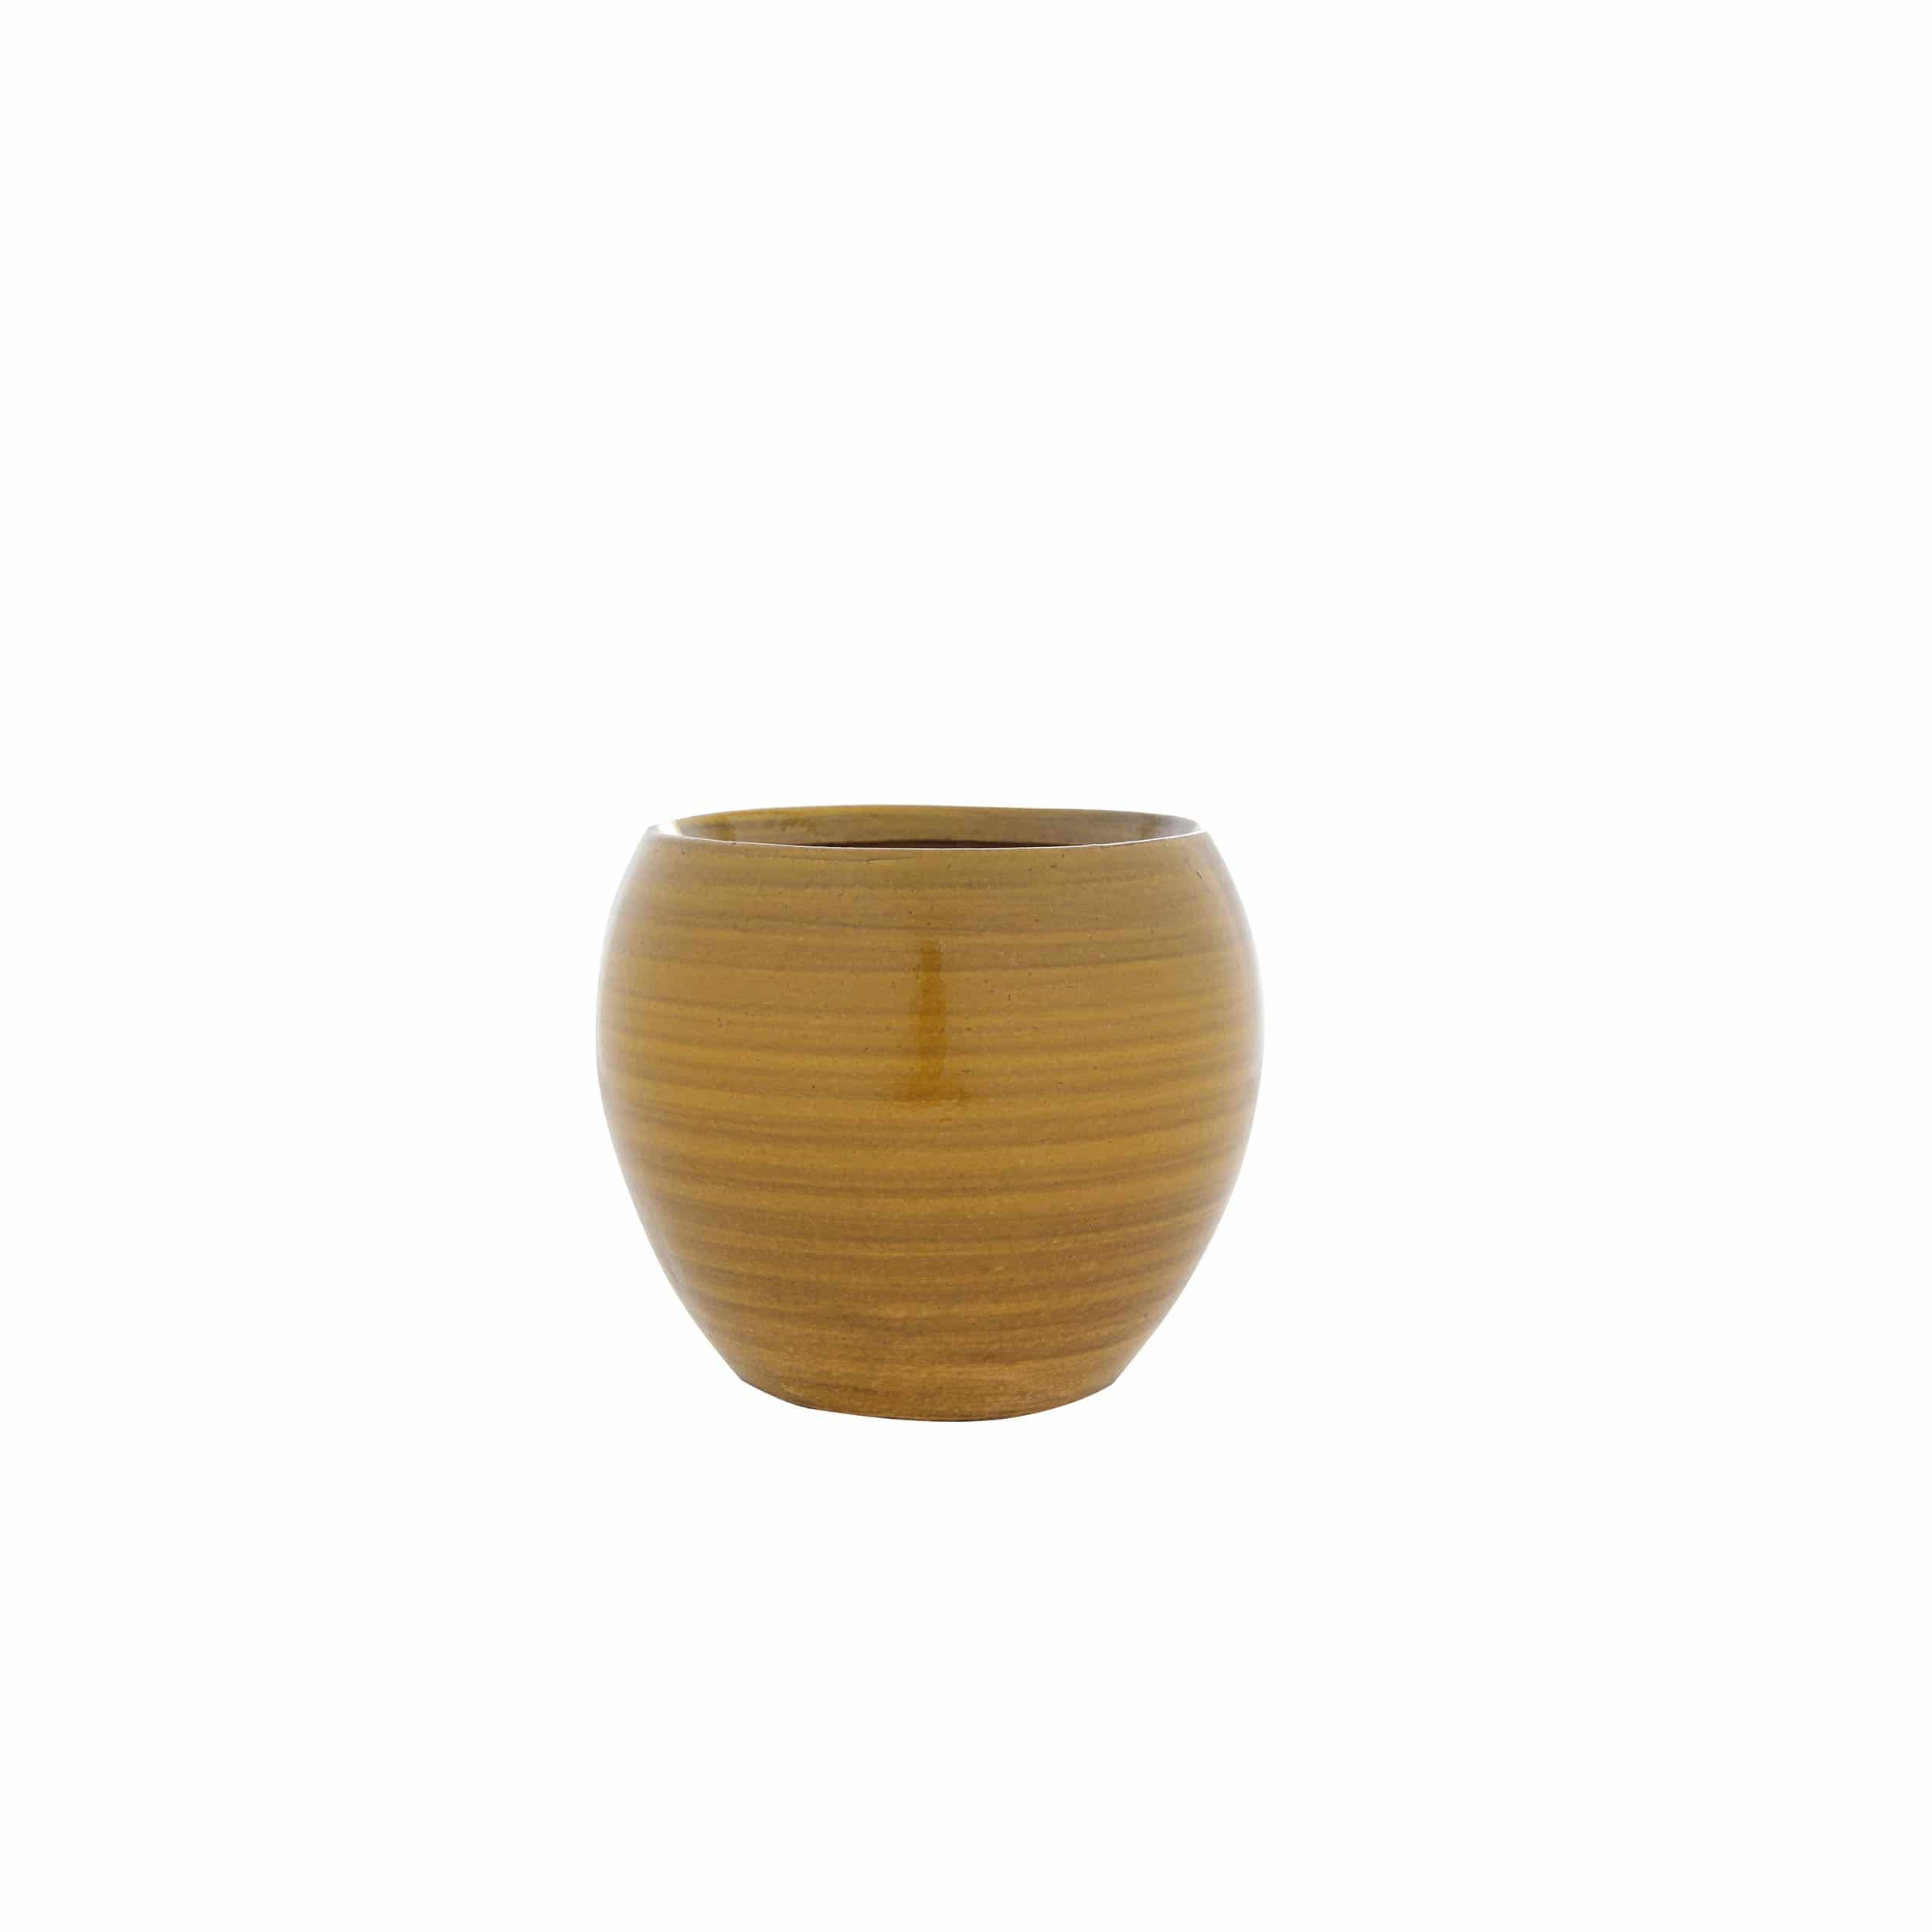 Keramik Blumentopf Cresta D17cm ockergelb